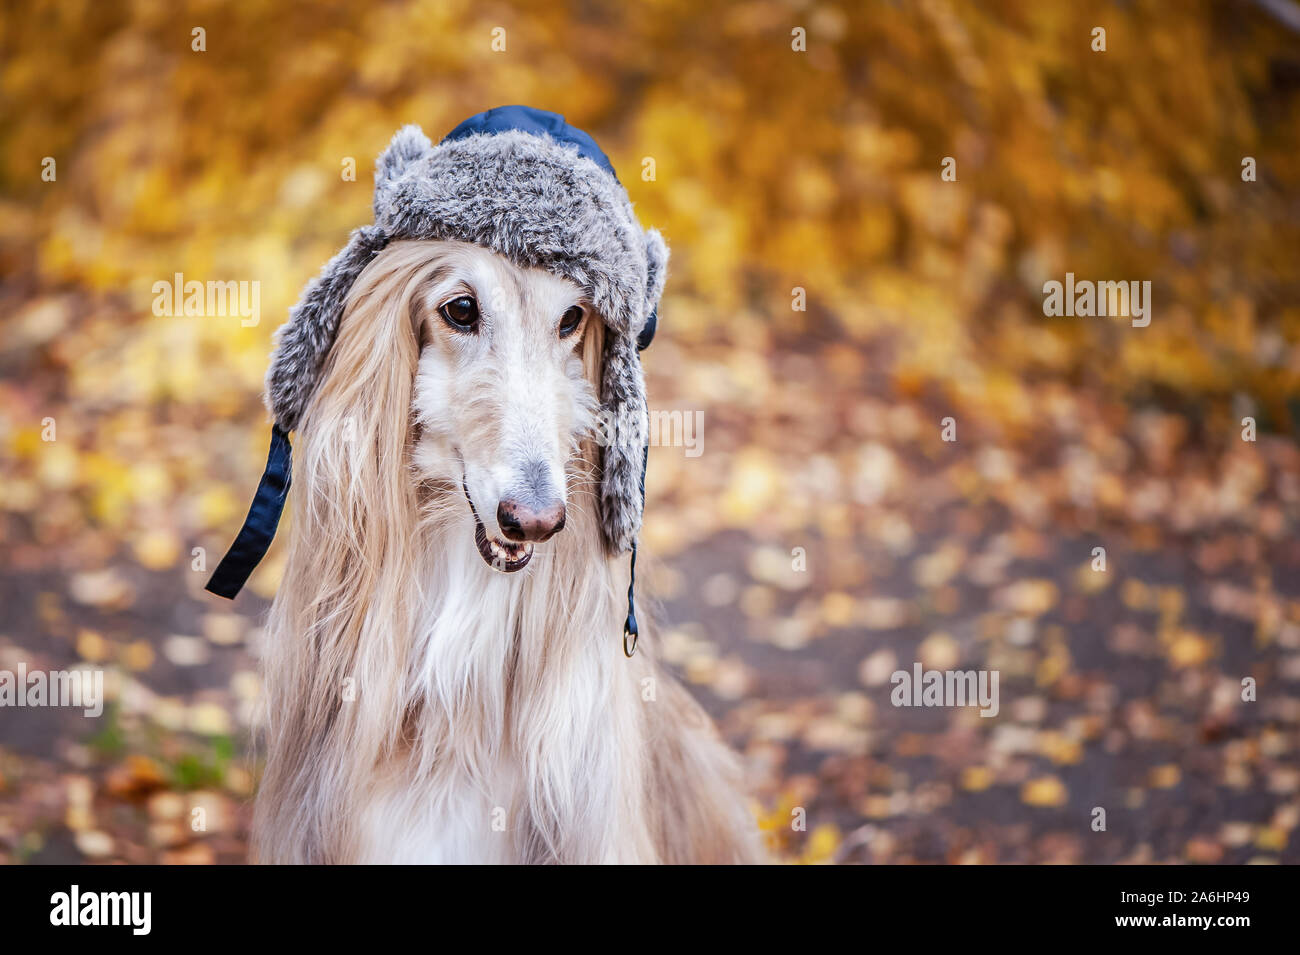 Chien, lévrier afghan dans un drôle de chapeau de fourrure, dans le  contexte de la forêt d'automne. Concept de vêtements pour animaux, mode  pour chiens Photo Stock - Alamy